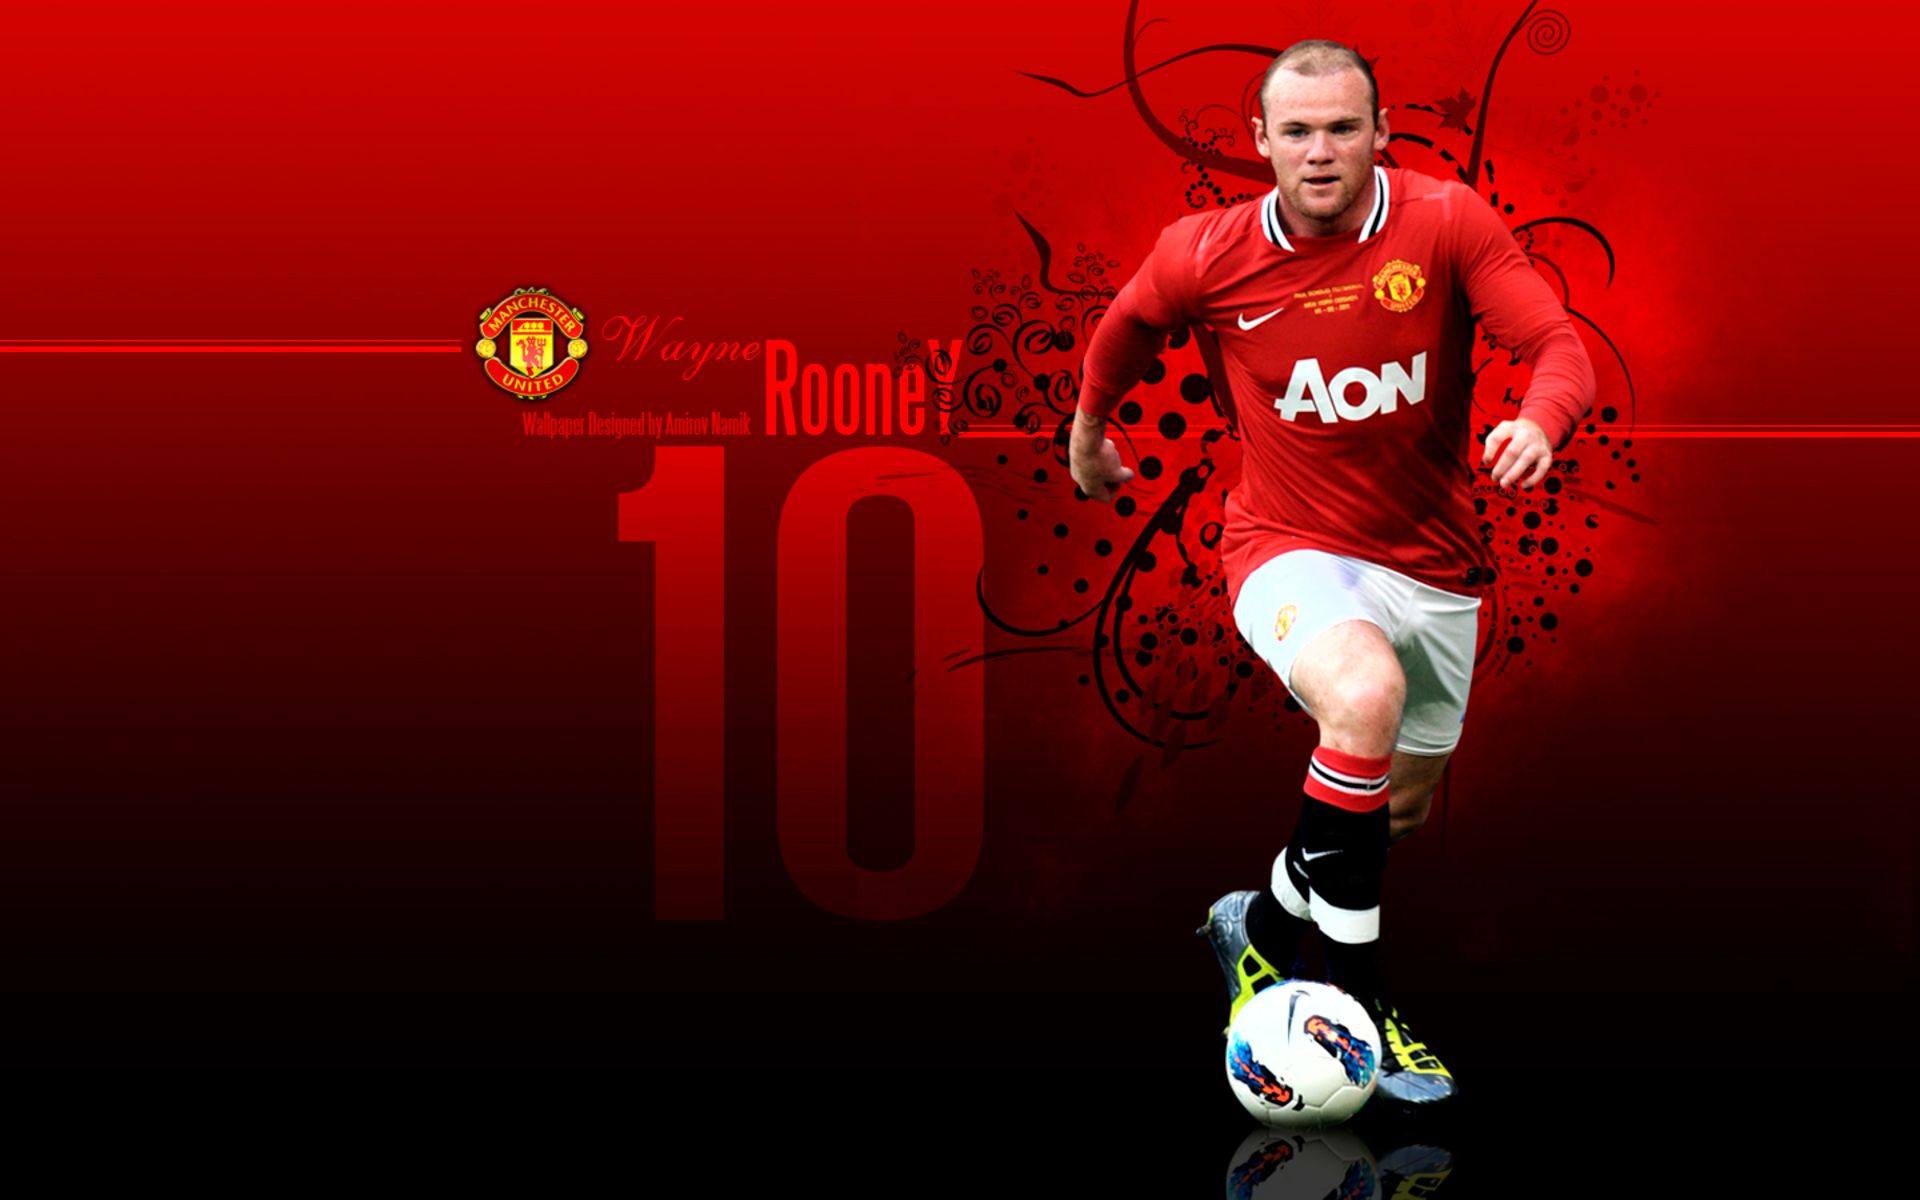 Descarga gratuita de fondo de pantalla para móvil de Fútbol, Deporte, Wayne Rooney, Manchester United F C.